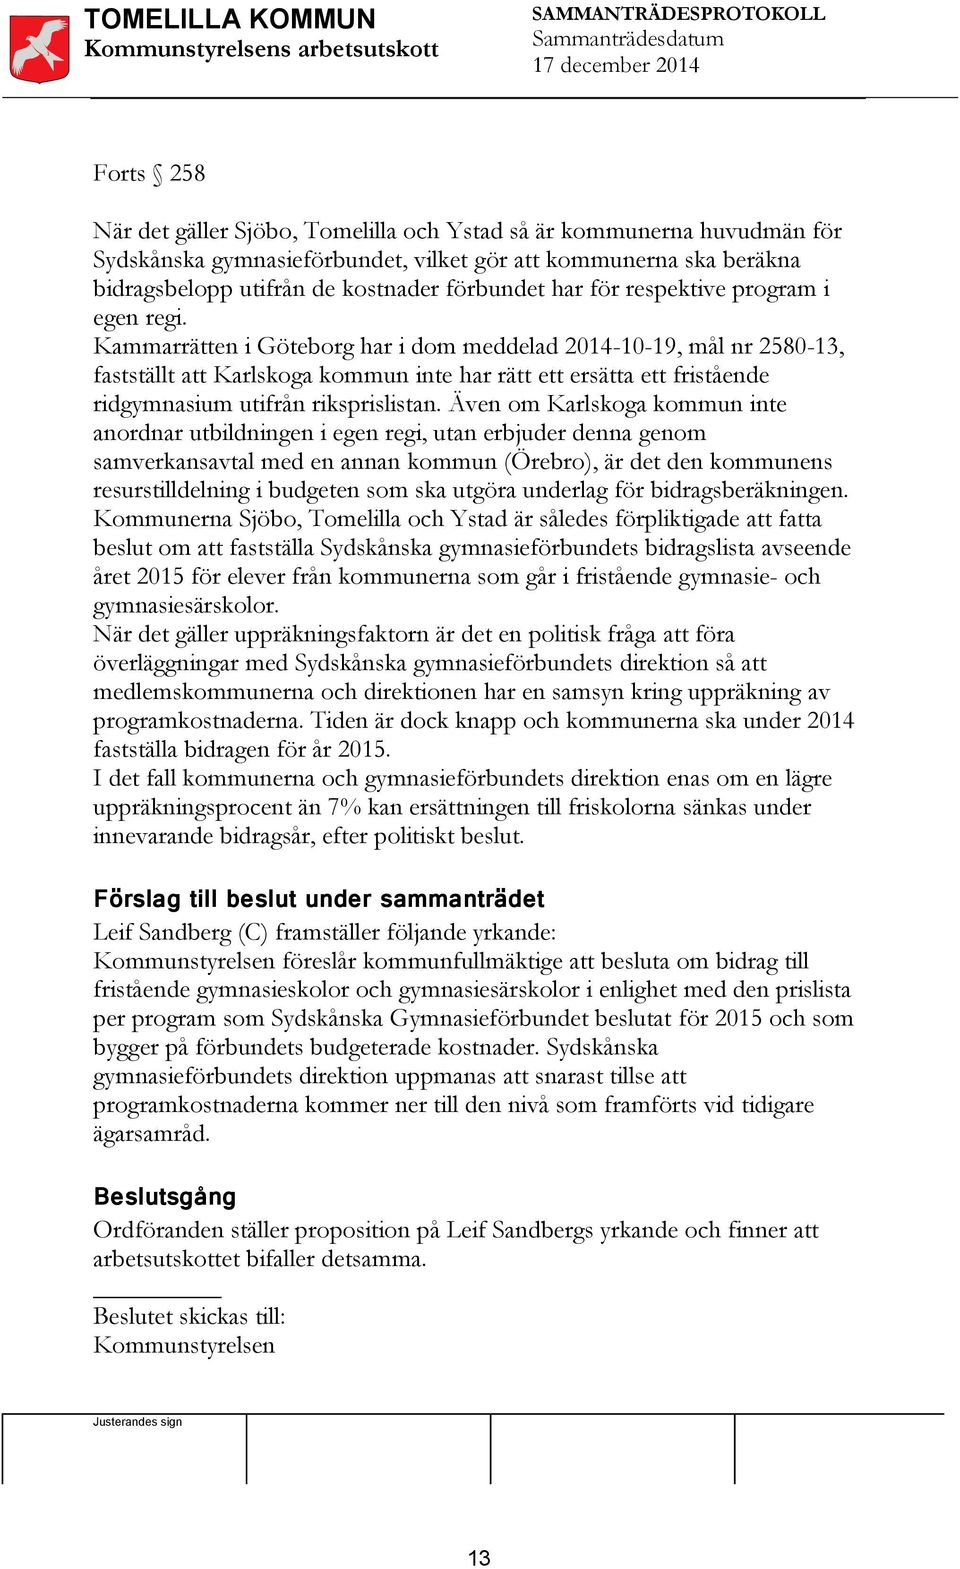 Kammarrätten i Göteborg har i dom meddelad 2014-10-19, mål nr 2580-13, fastställt att Karlskoga kommun inte har rätt ett ersätta ett fristående ridgymnasium utifrån riksprislistan.